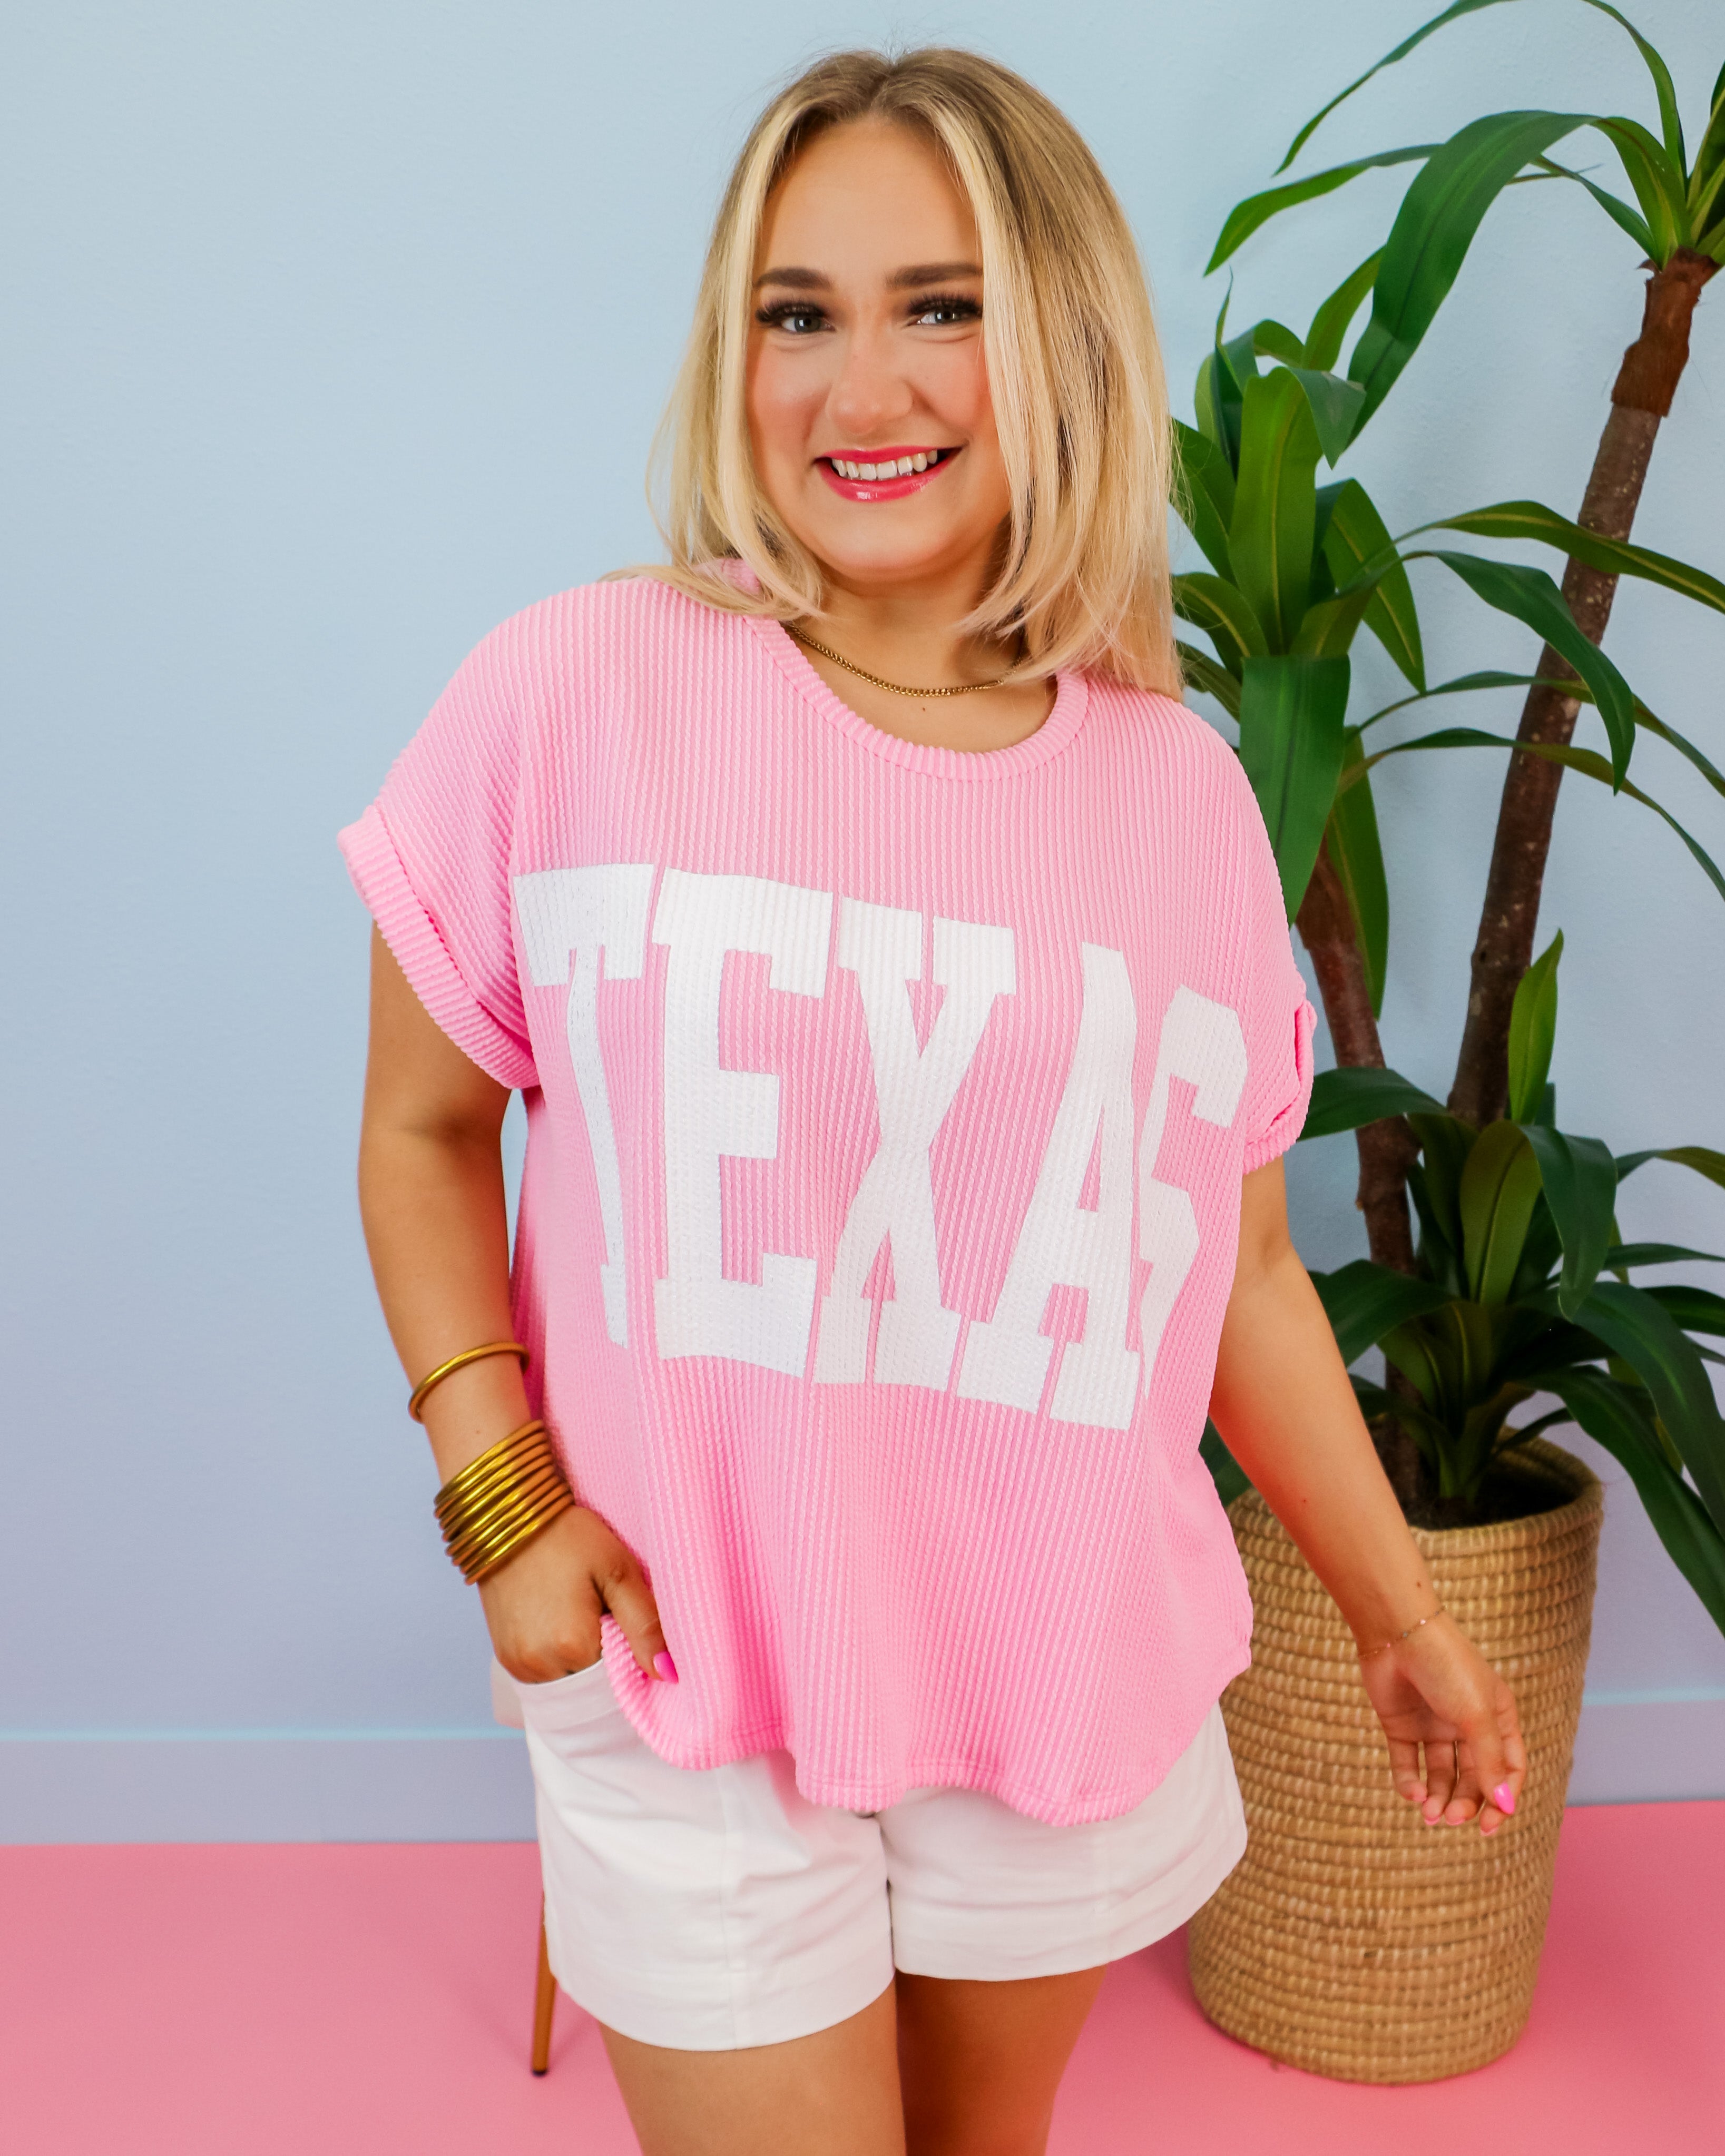 'TEXAS' Comfy Oversize Graphic Sweatshirt Top in Baby Pink